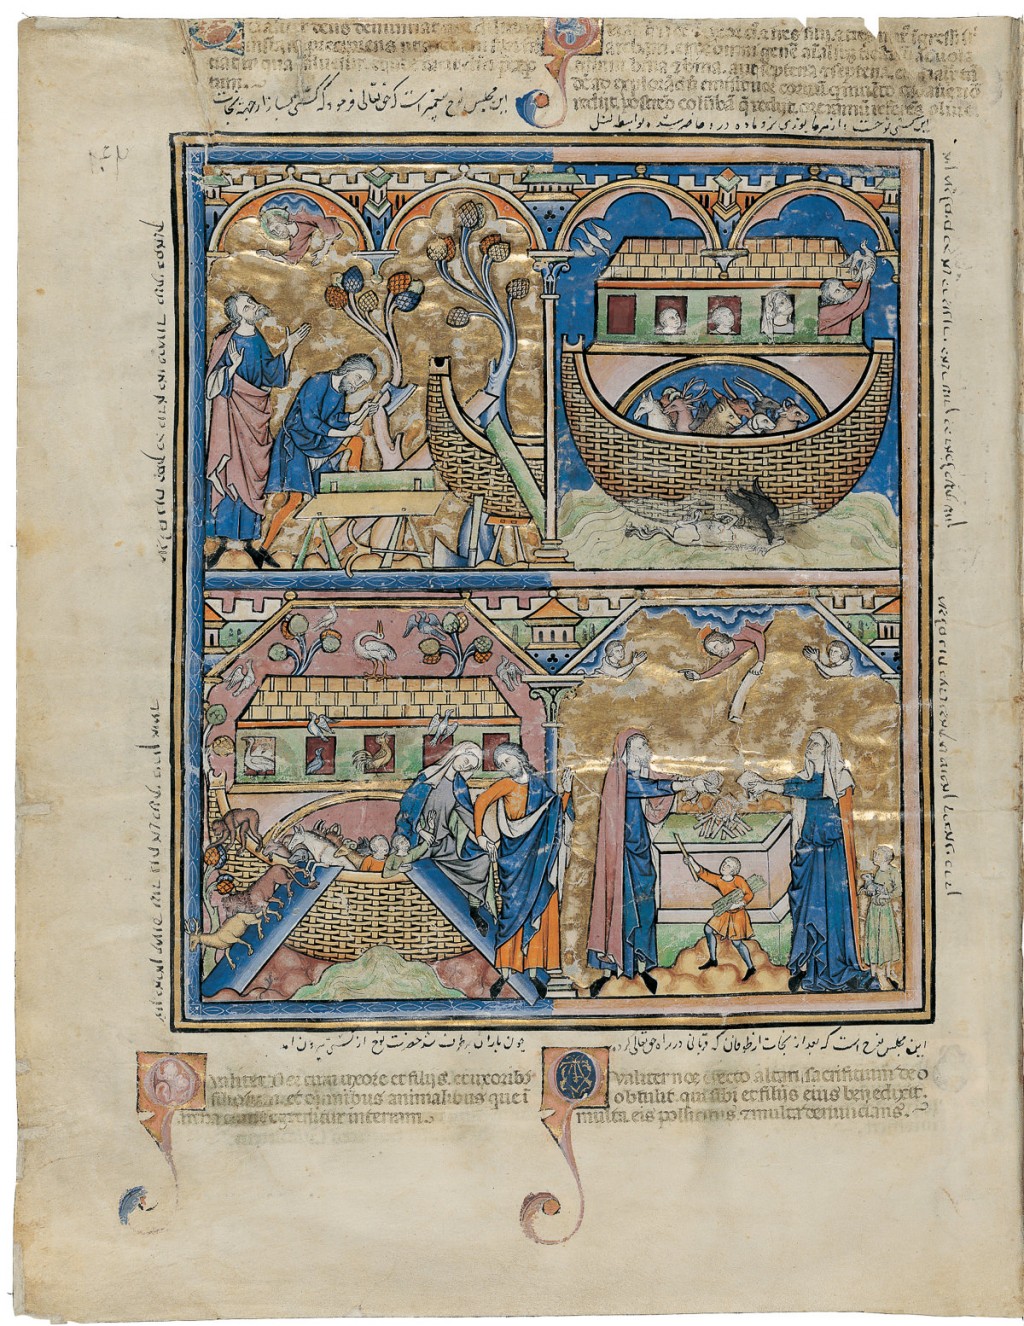 Illuminated page from the Morgan Crusader’s Bible